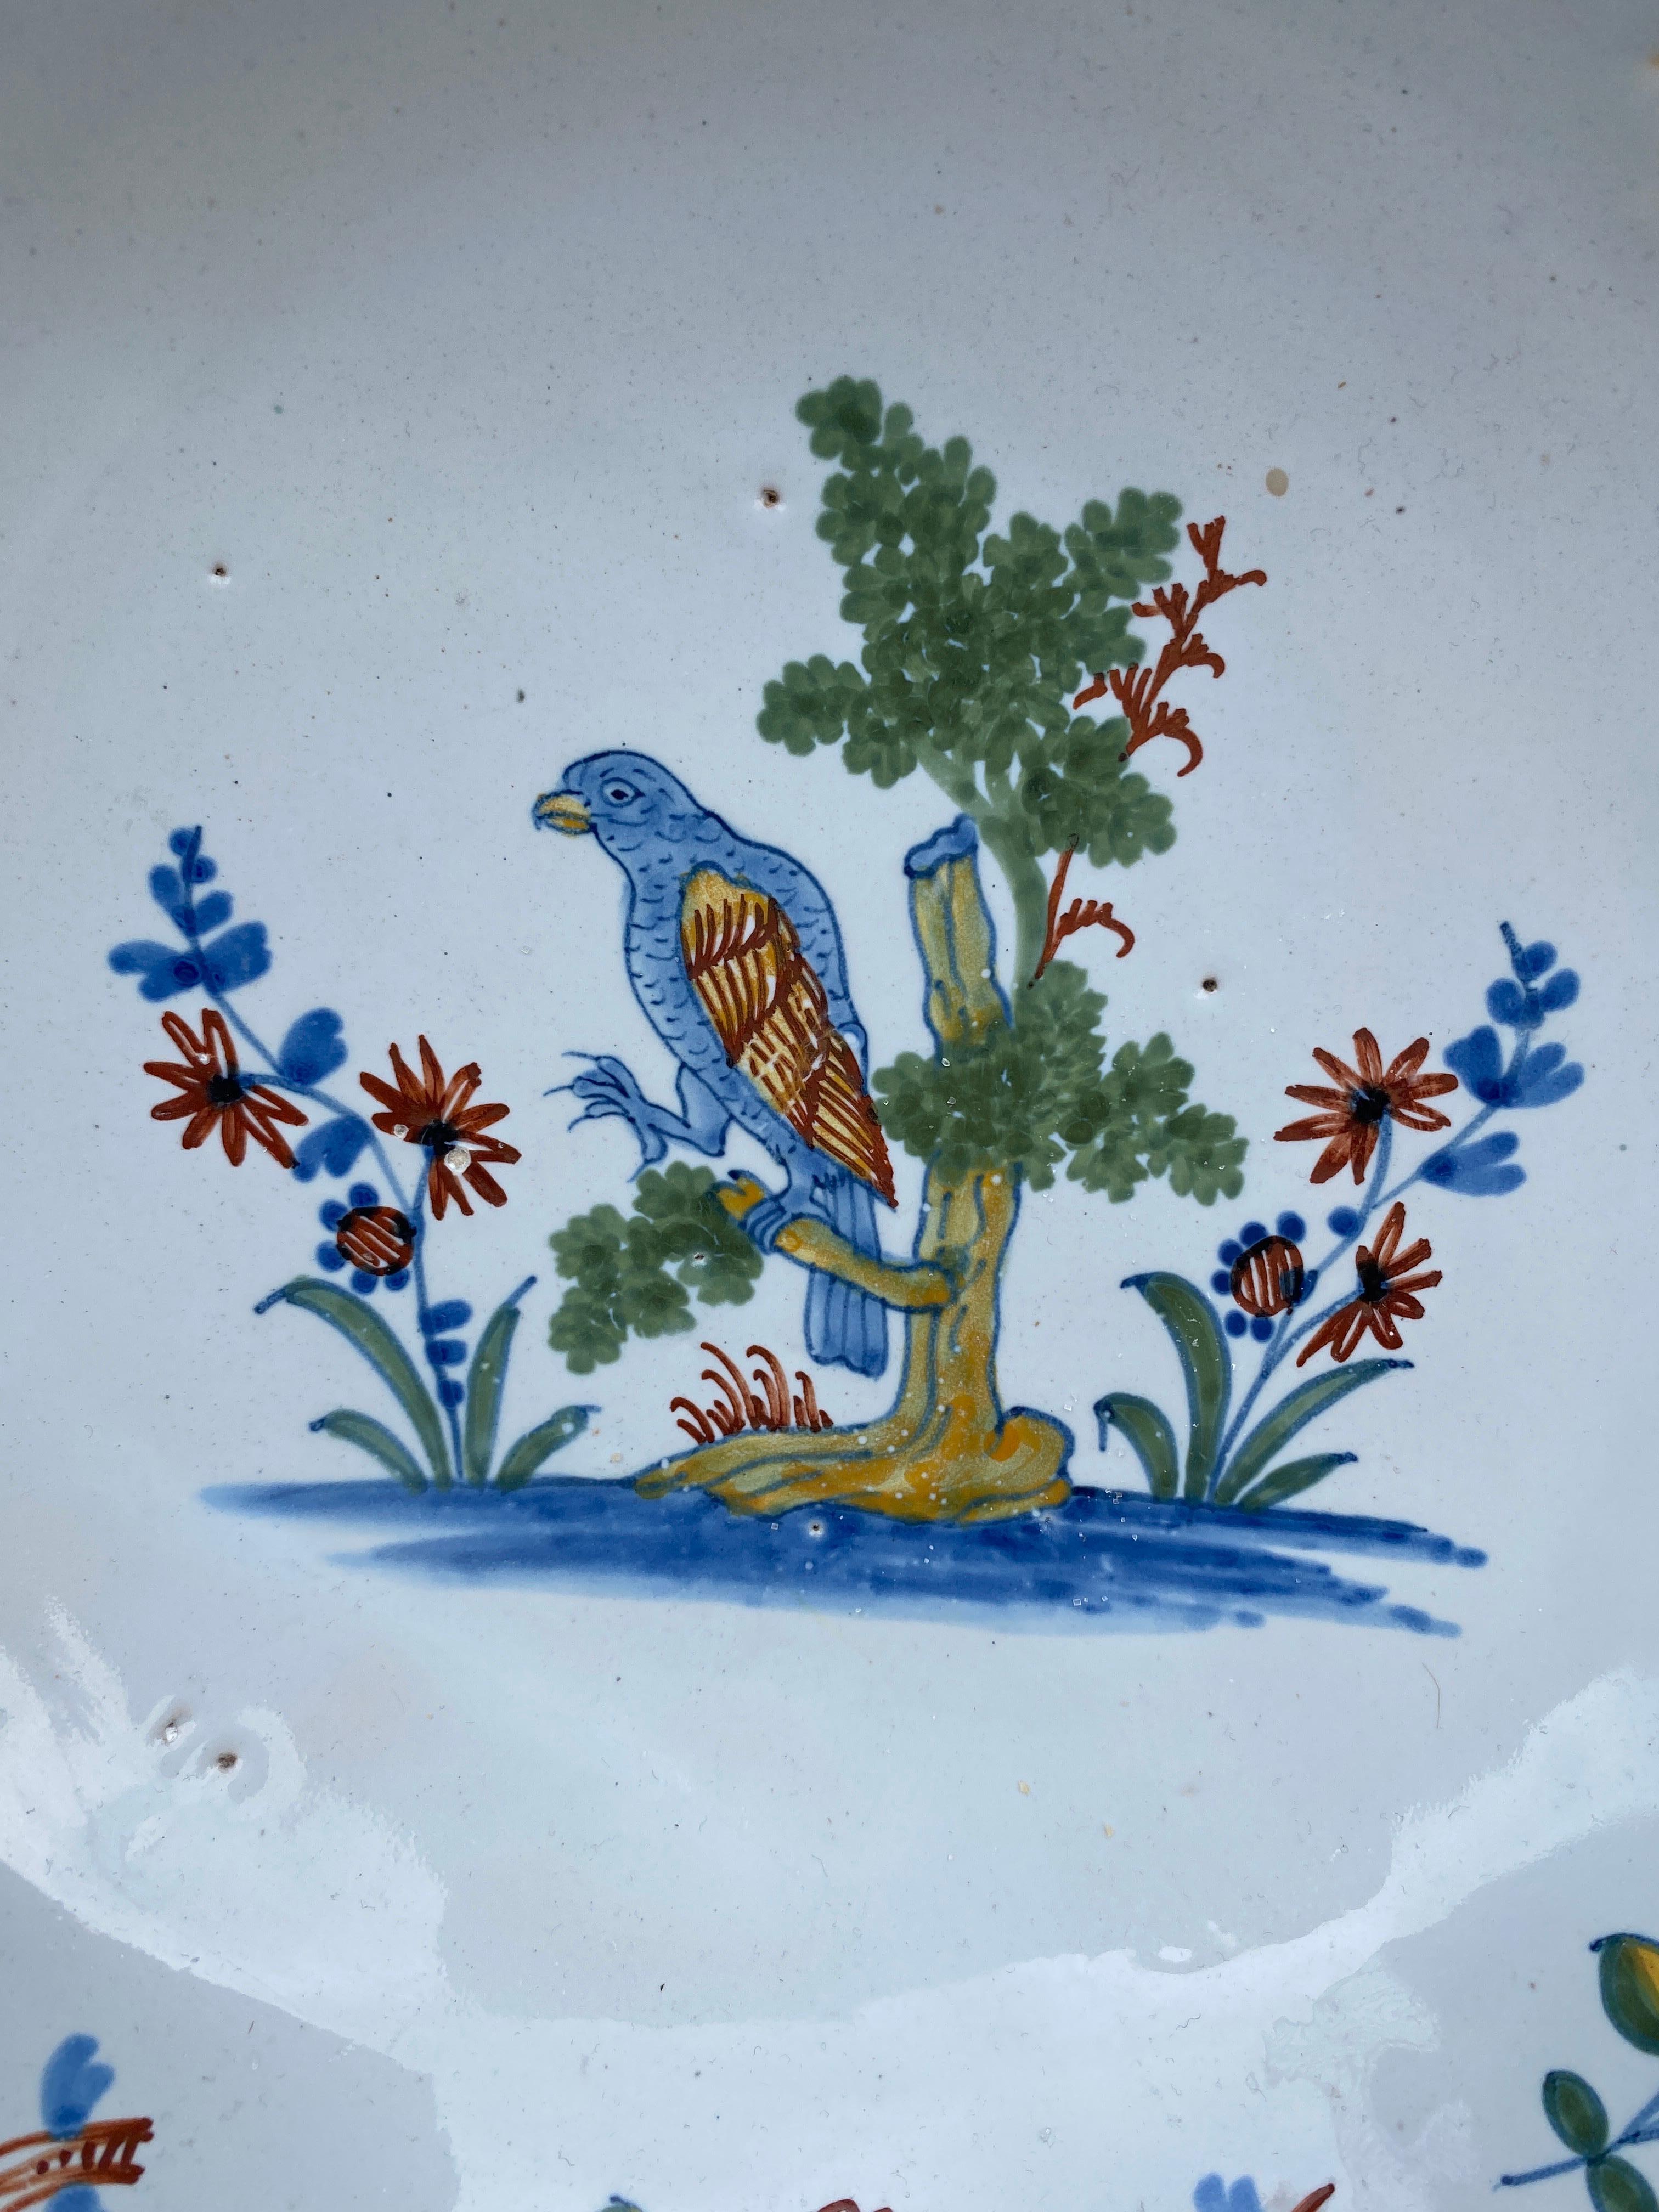 Grand bol à perroquet en faïence française du XVIIIe siècle La Rochelle.
Au centre, un perroquet dans un arbre.
Couleur bleu bleuet inhabituelle, décorée de fleurs et d'insectes.